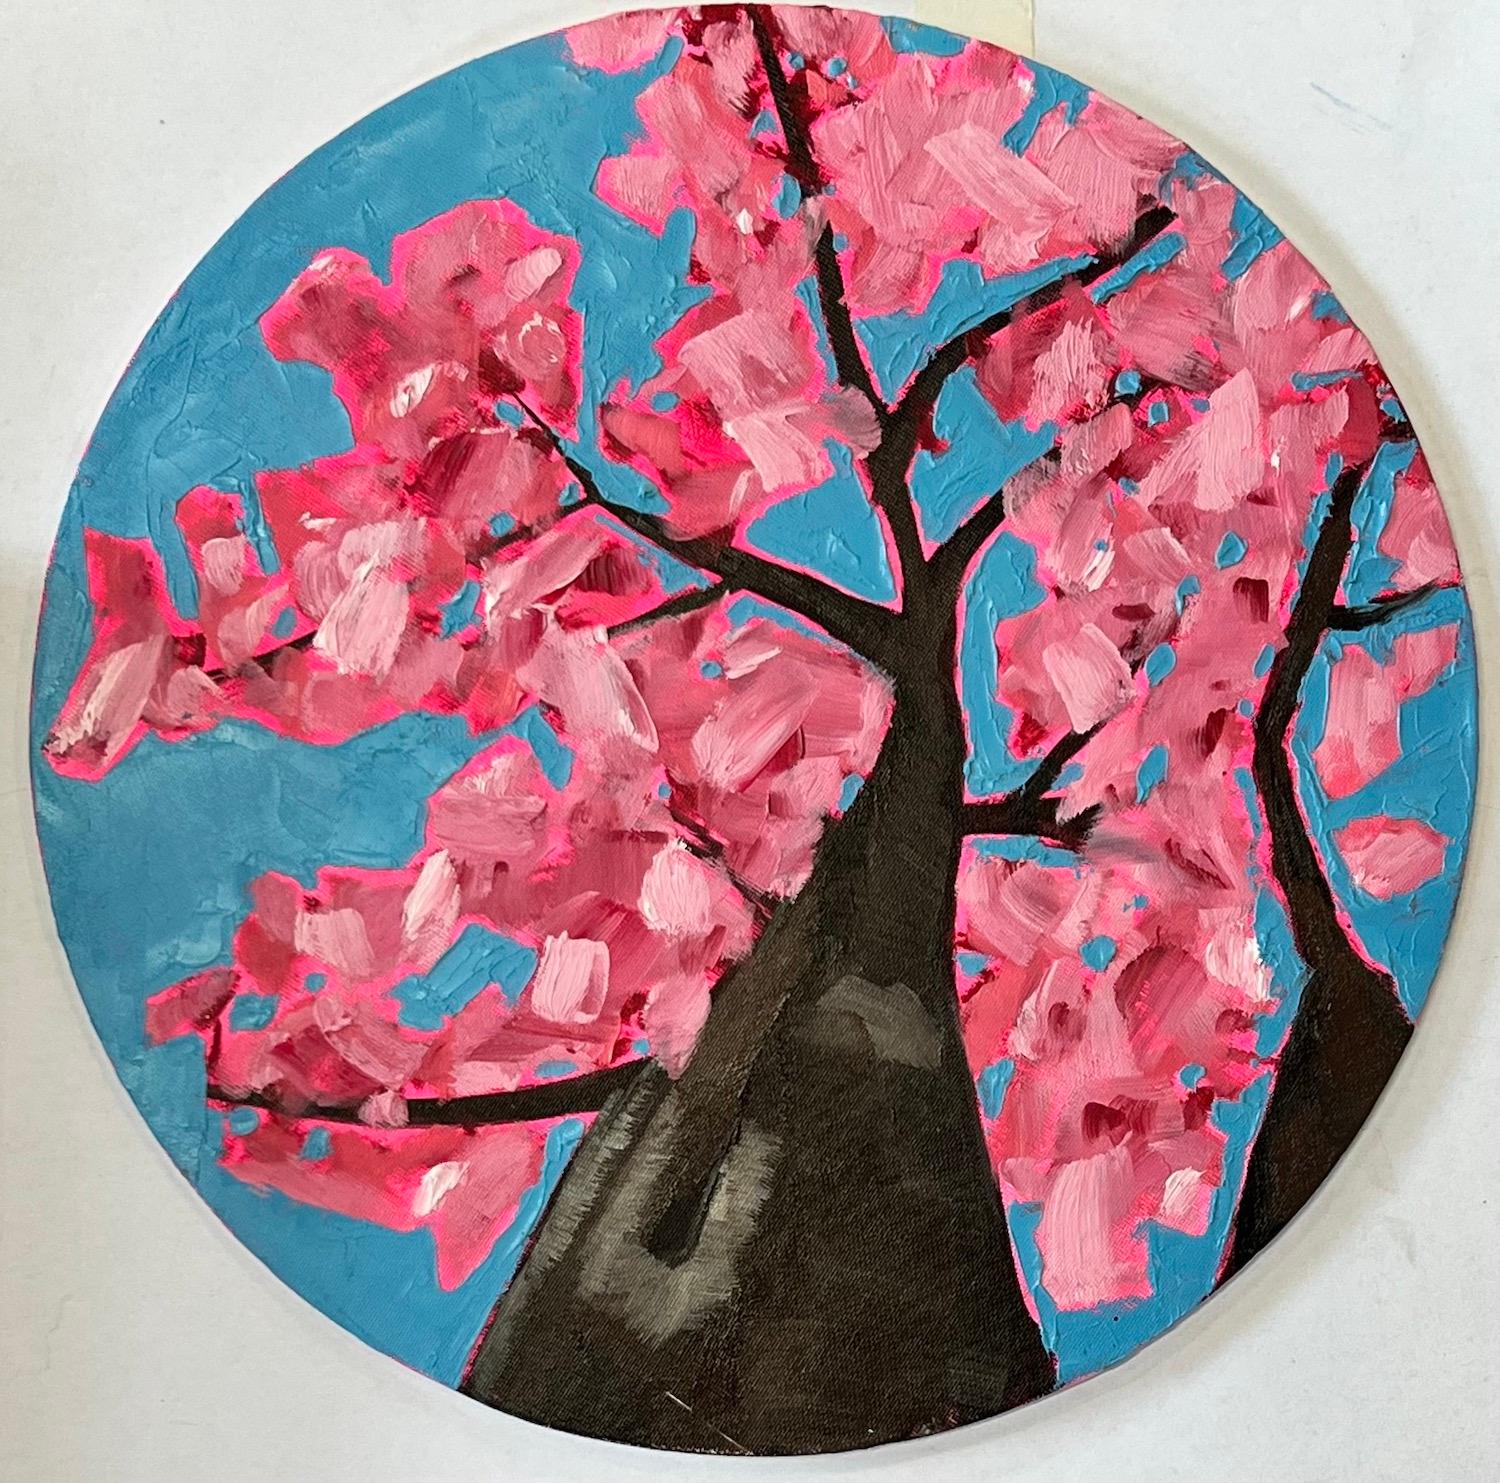 Durch die Kirschblüte aufblicken und nachdenken von Emily Finch [2021]
Signiert von der Künstlerin
Öl auf Leinwand, Karton
Bildgröße: H:30 cm x B:30 cm x T 0,3cm 
Ungerahmt verkauft
Bitte beachten Sie, dass die Insitu-Bilder lediglich einen Hinweis